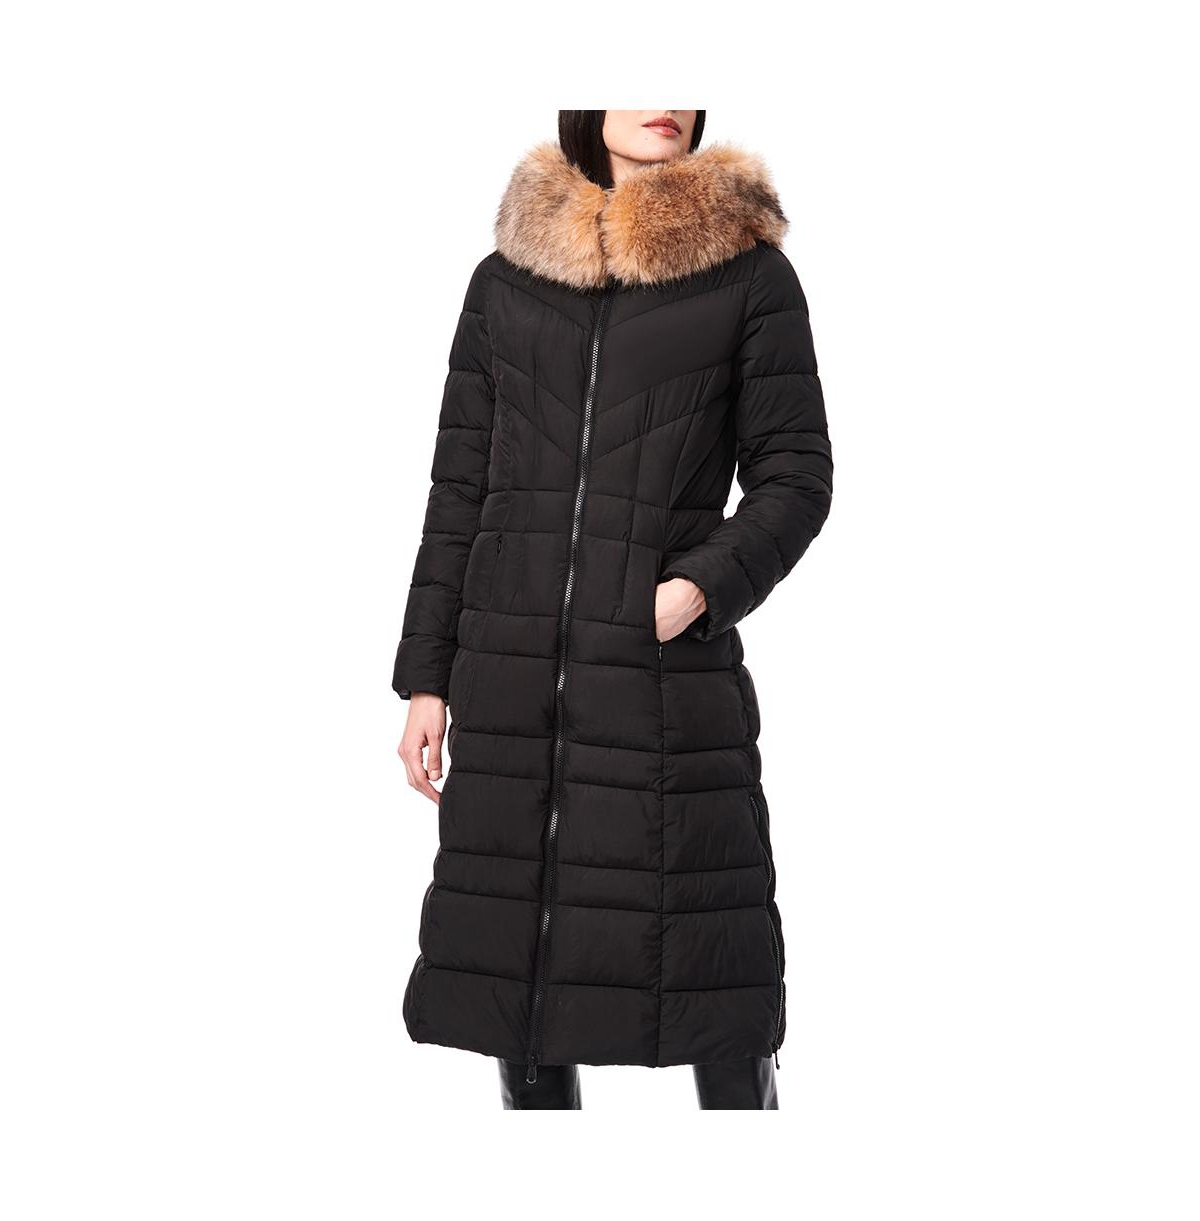 Women's Maxi Coat with Faux Fur Trim - Black